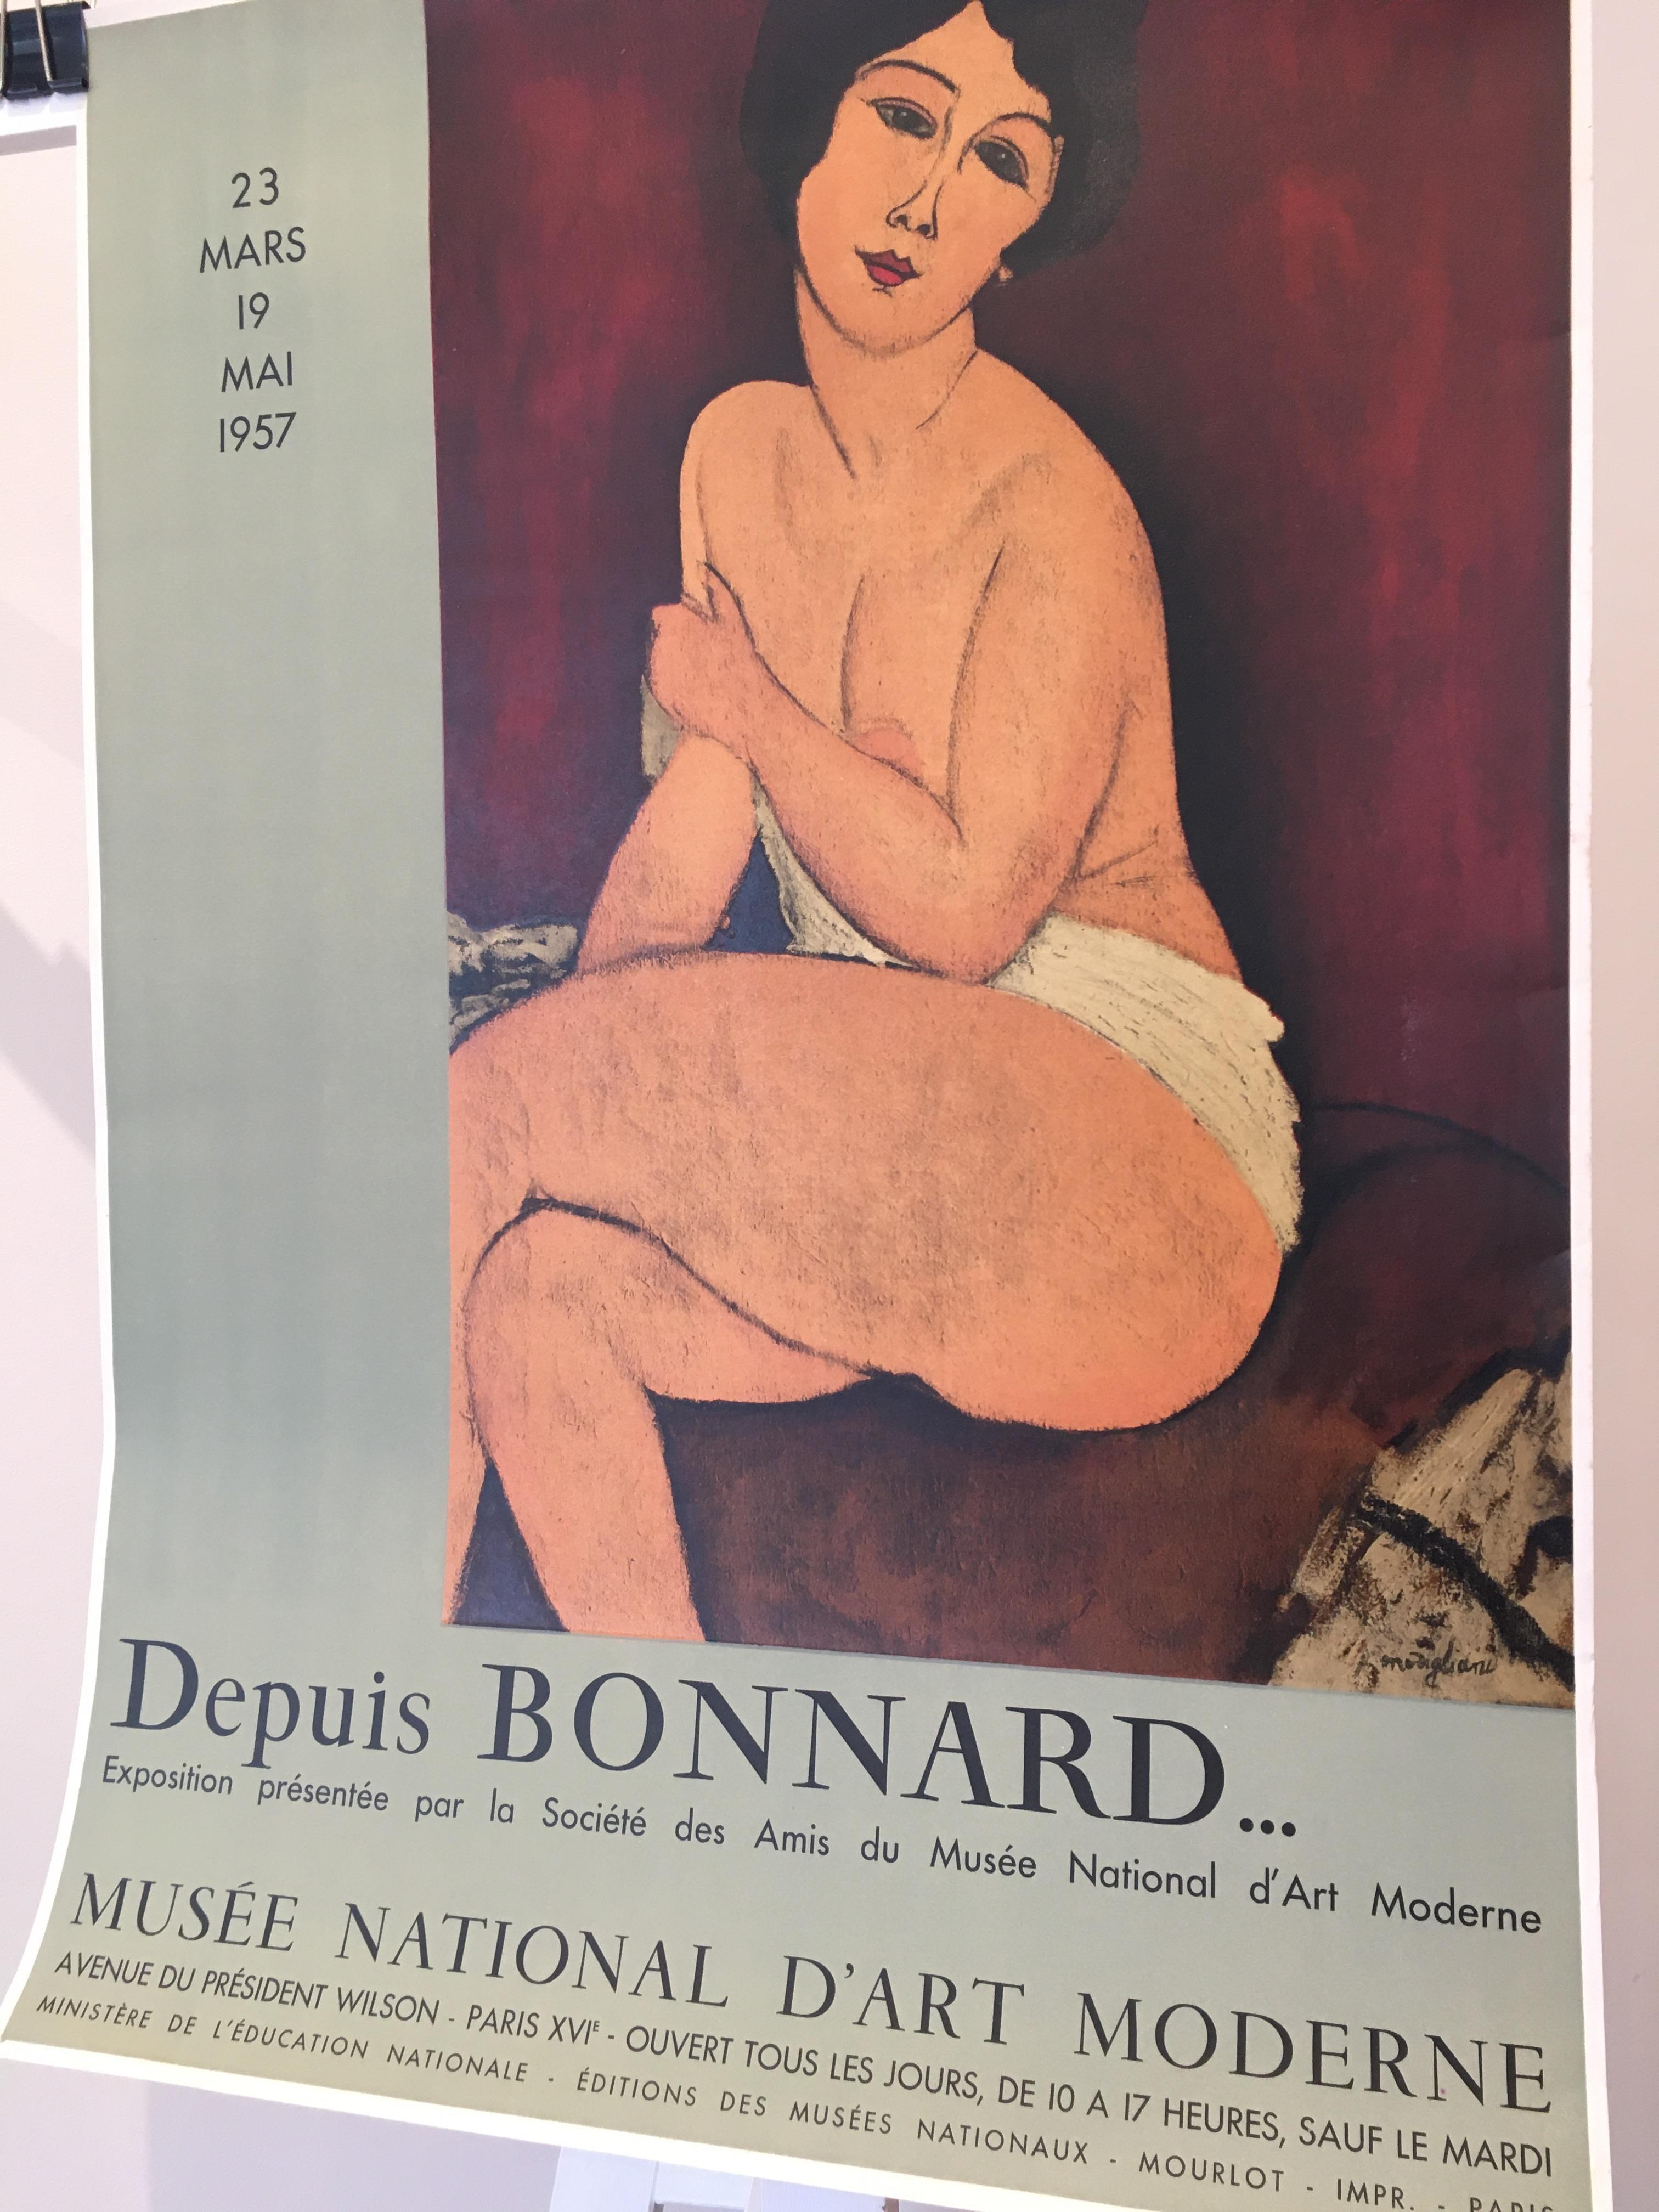 Original vintage affiche d'exposition d'art MODIGLIANI DEPUIS BONNARD, 1957

Il s'agit d'une affiche vintage originale de 1957 

Artiste
Modigliani

Année
1957

Dimensions
73 x 51,5 cm

Format
Non-linen